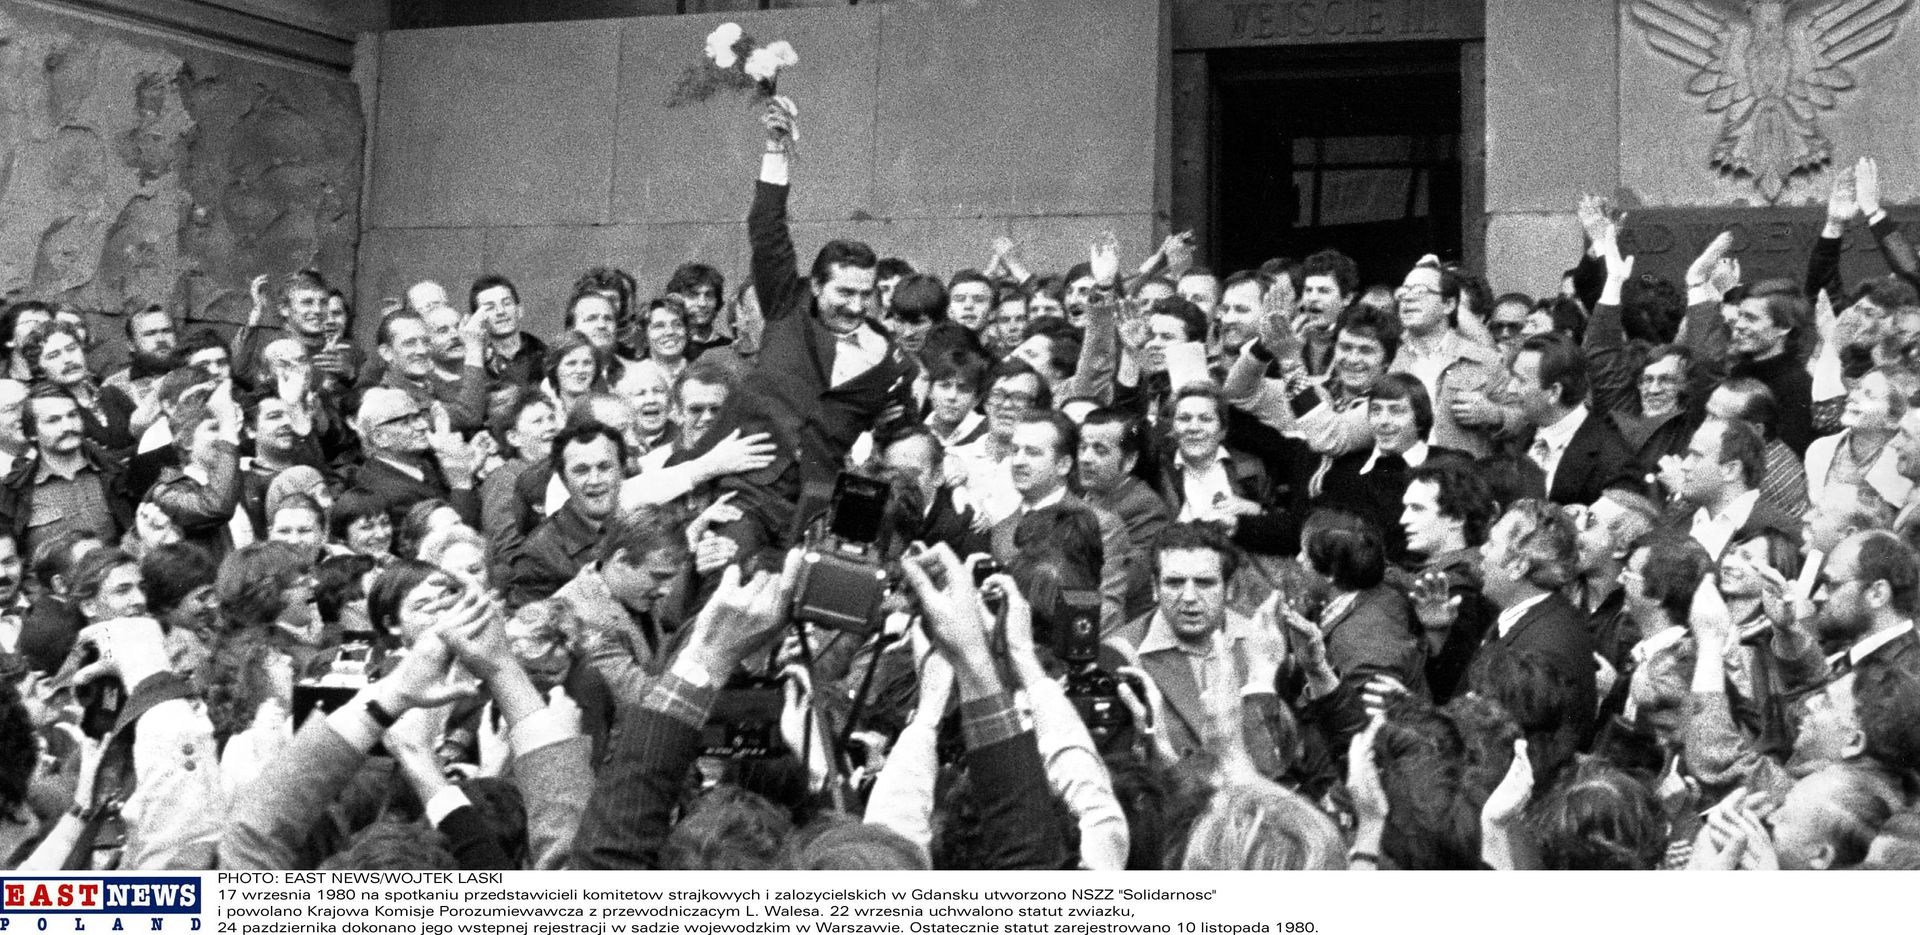 Hajógyári munkások ünneplik Walesát 1980-ban, aki sikerre vitte a gdanski sztrájkot / Fotó: Getty